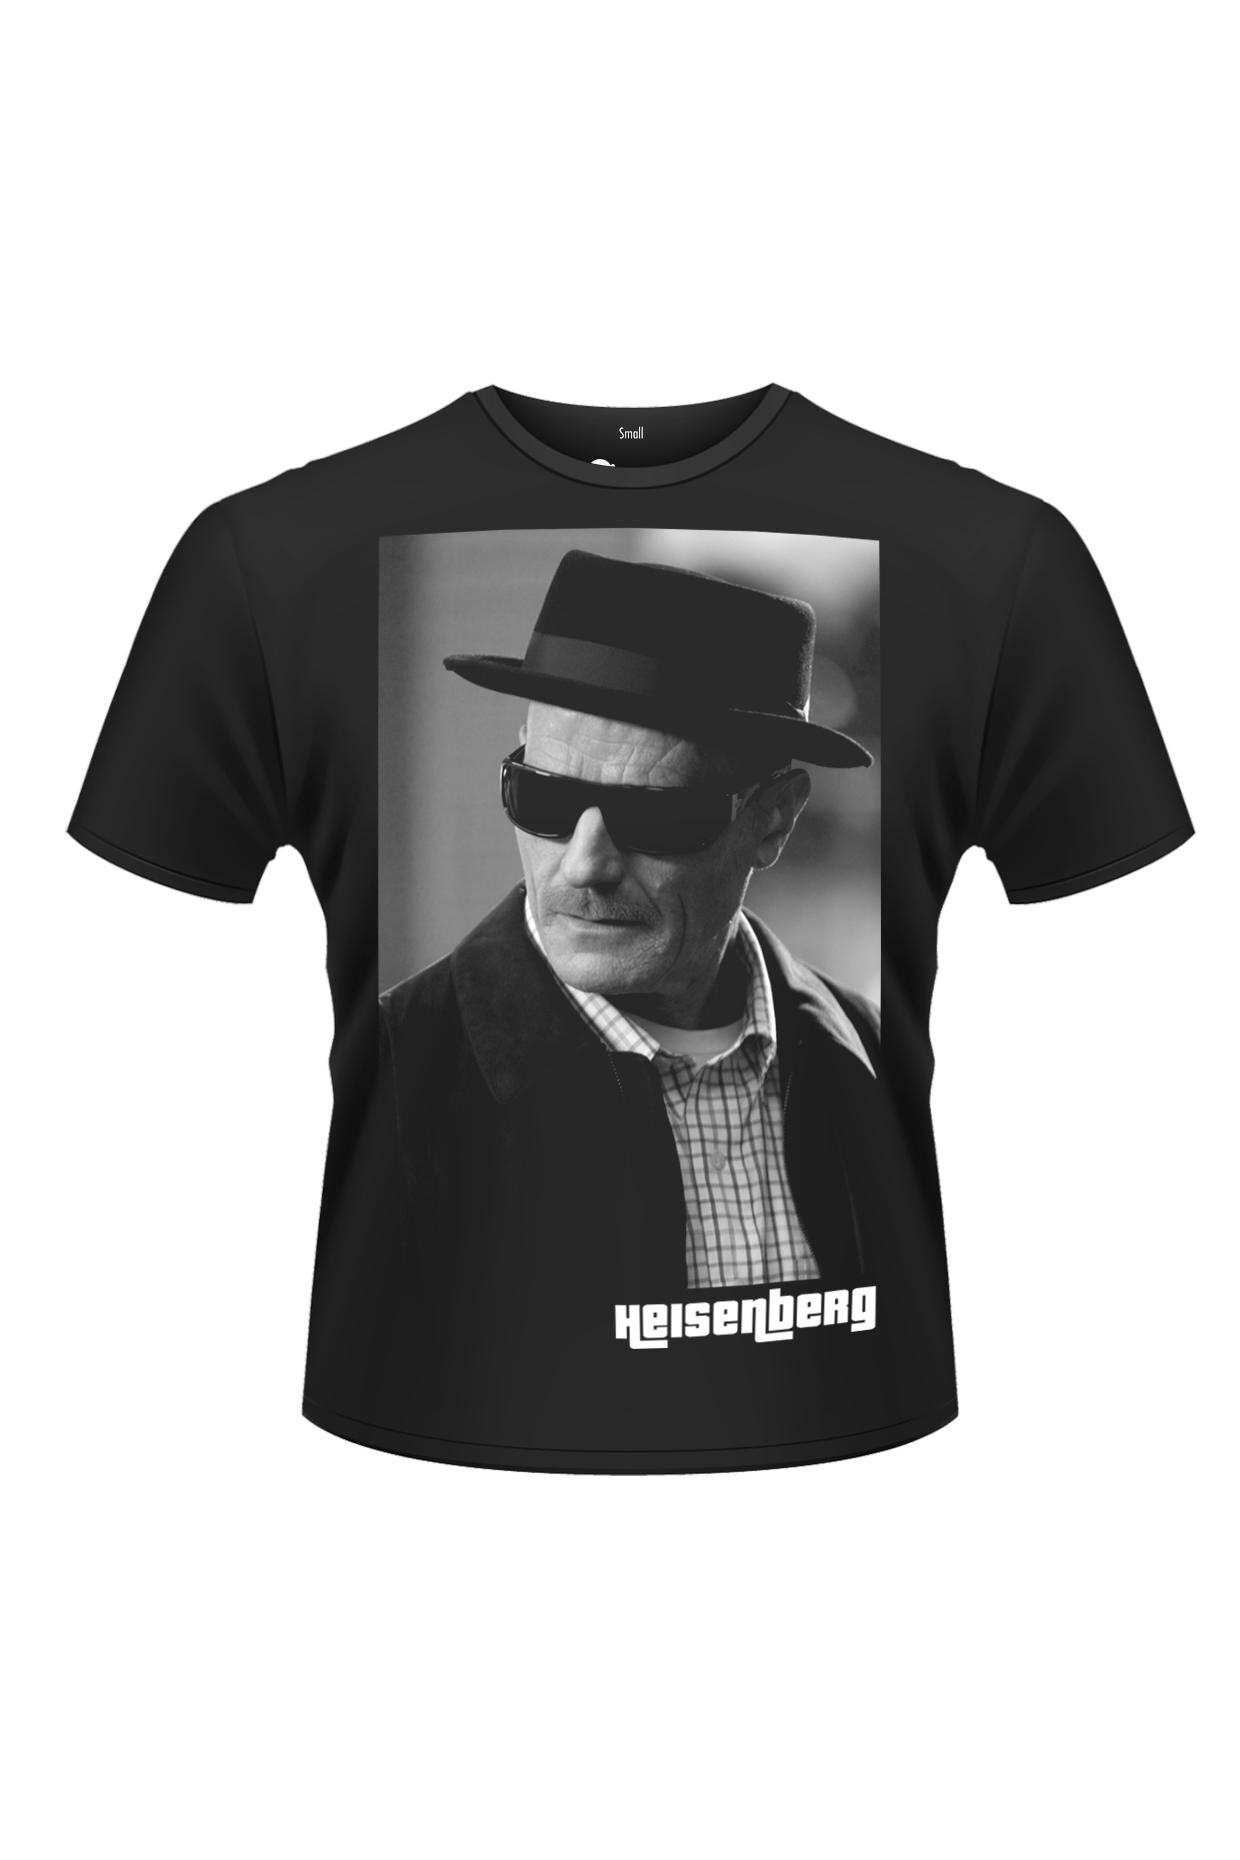 Tricou negru pentru barbati, Bad, Heisenberg, S - eMAG.ro